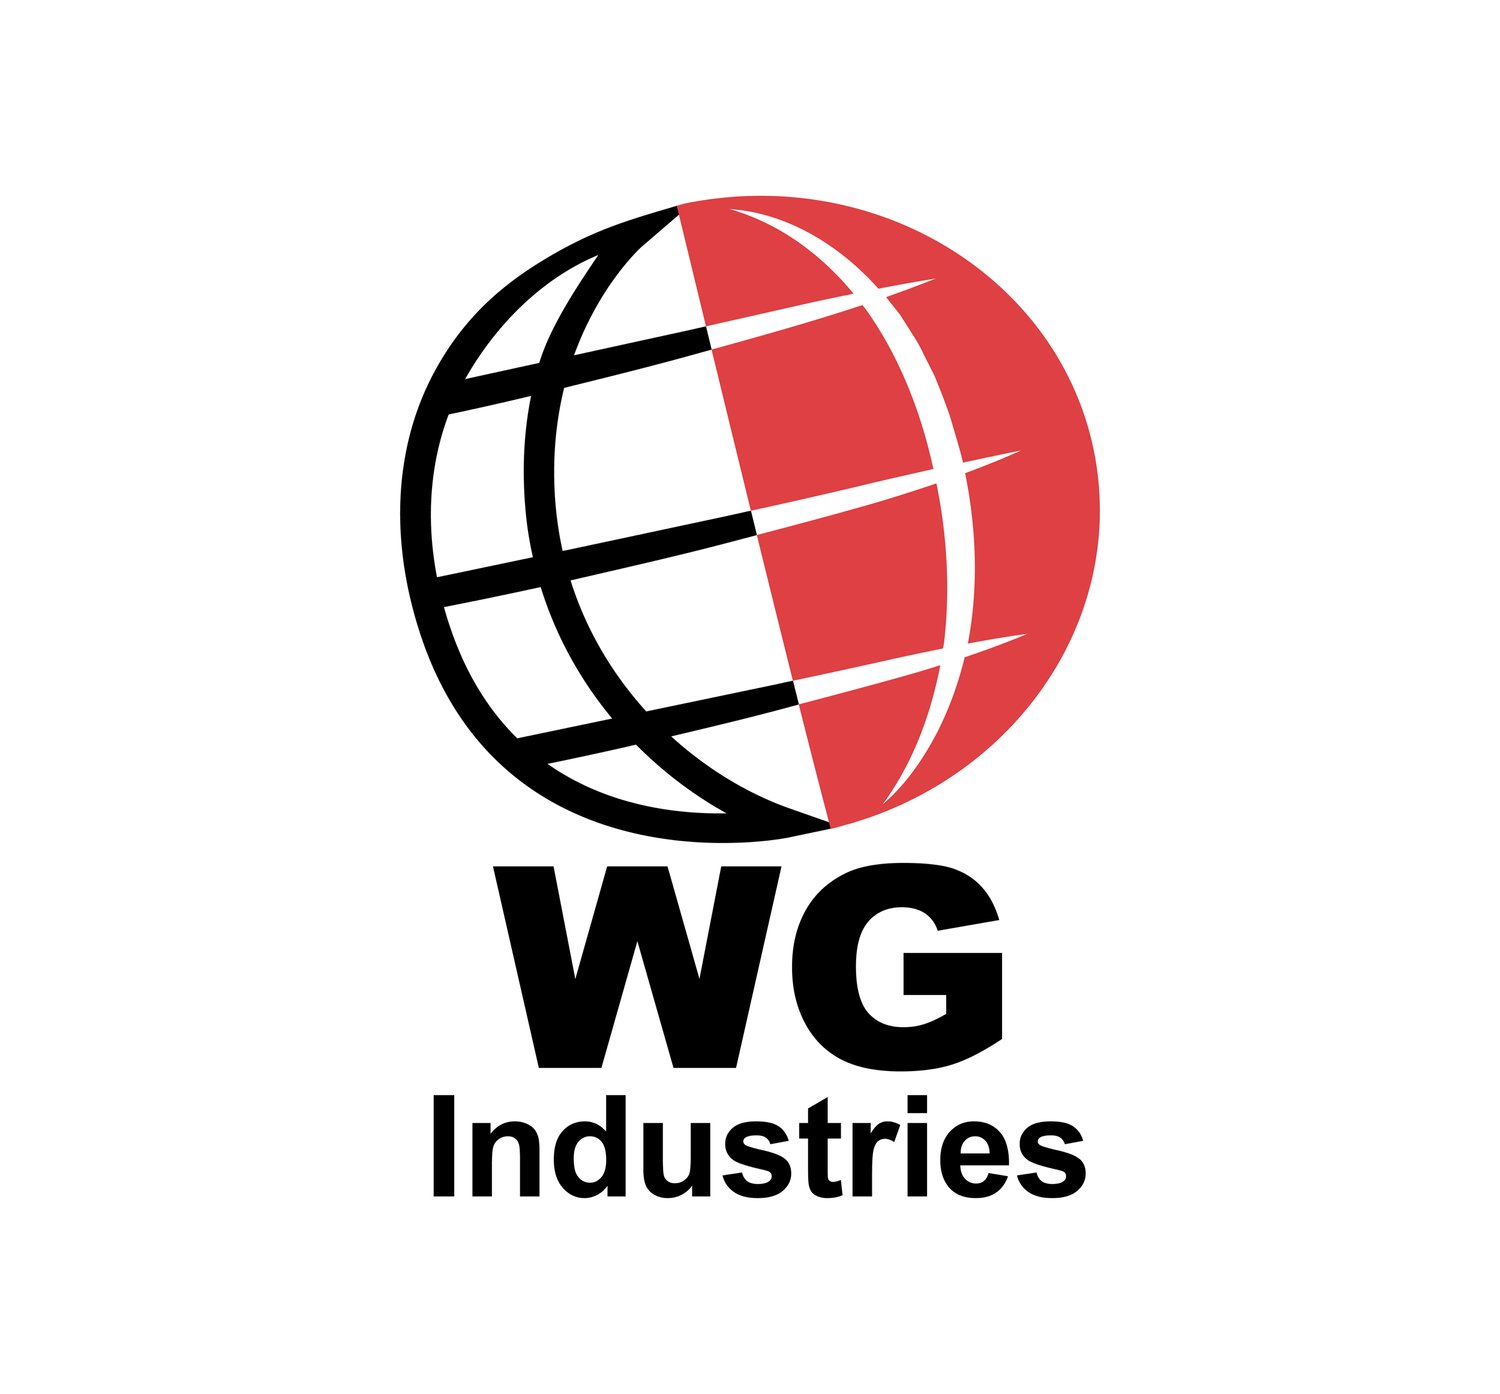 WG Industries